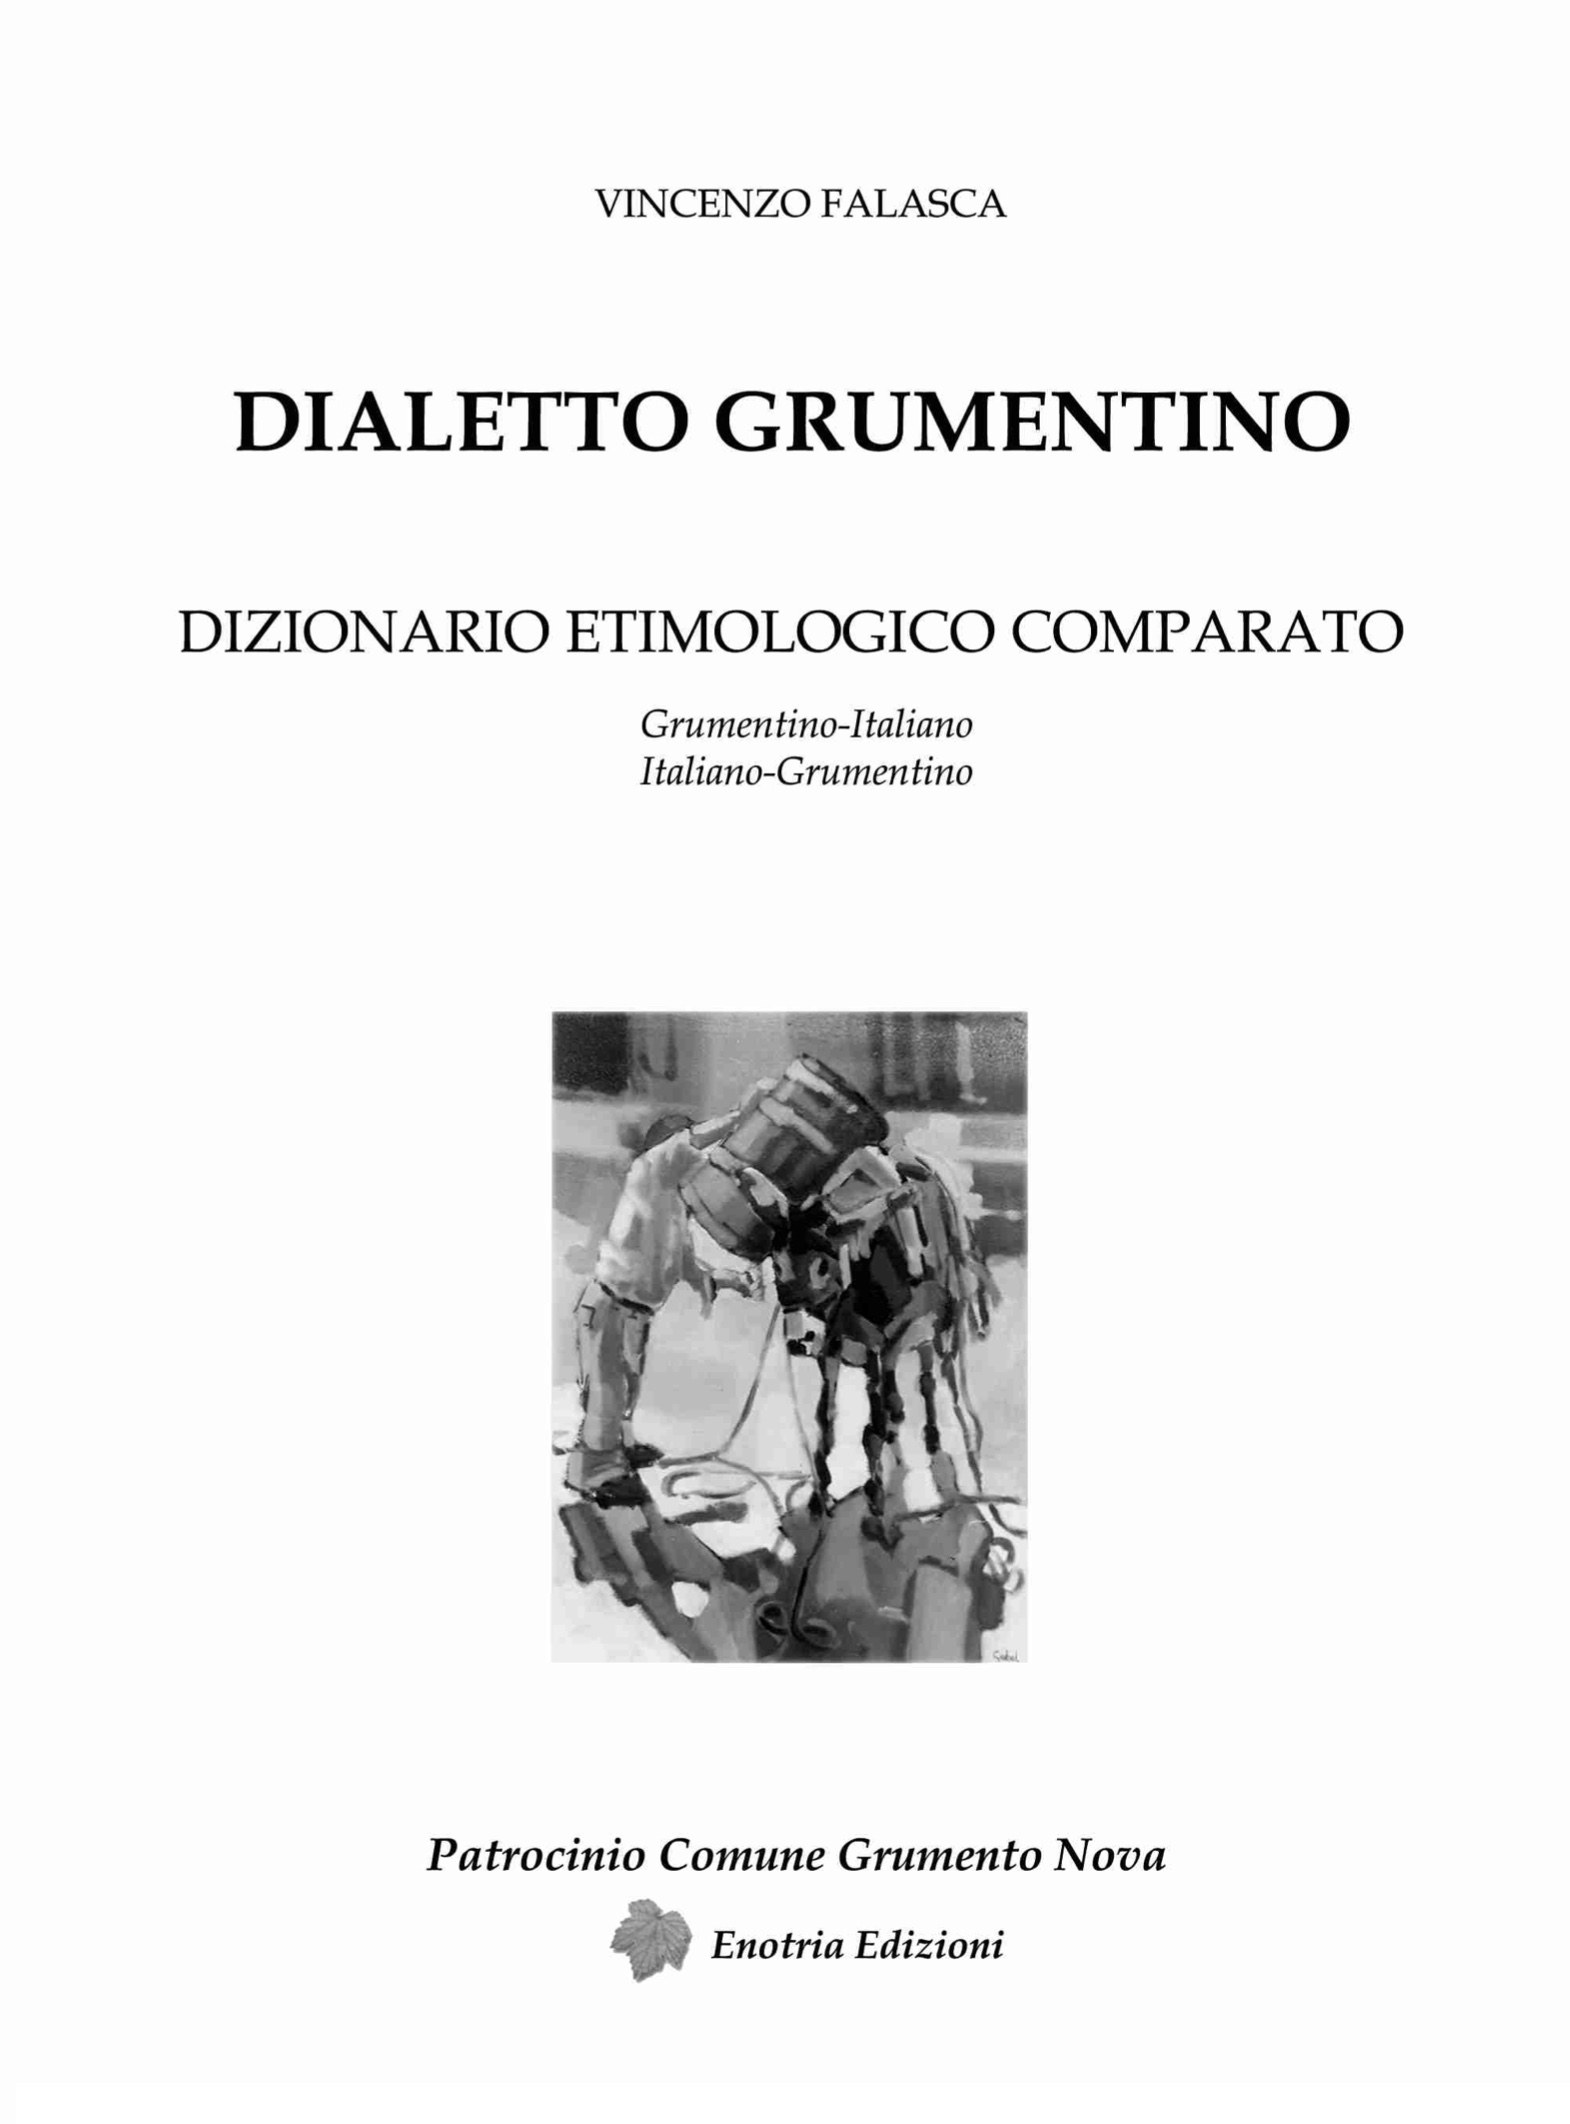 Dialetto Grumentino: Dizionario etimologico comparato